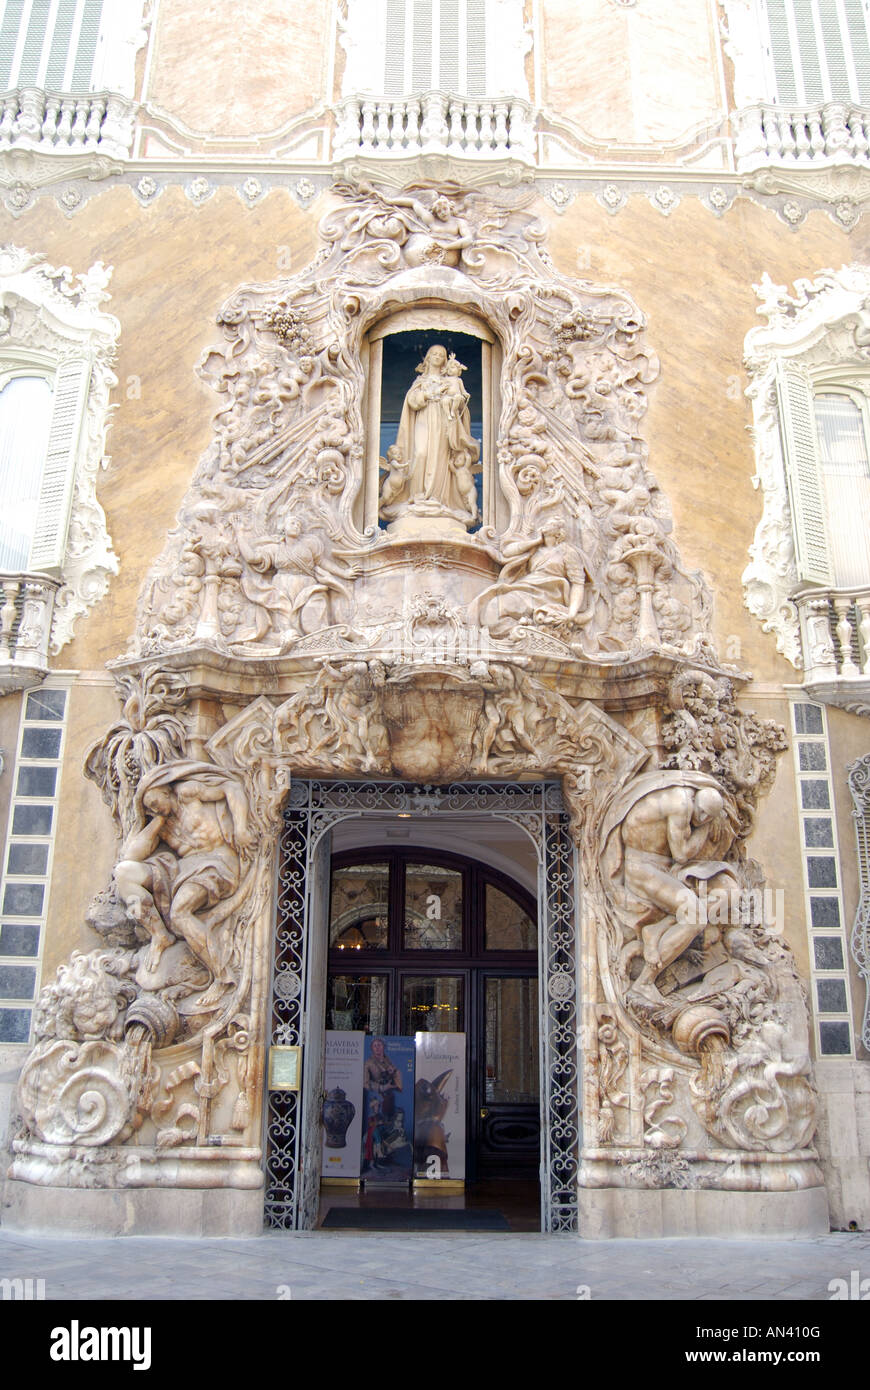 Ornate entrance, Museo de Ceramica, Old Town, Valencia, Costa del Azahar,  Valencia Province, Spain Stock Photo - Alamy